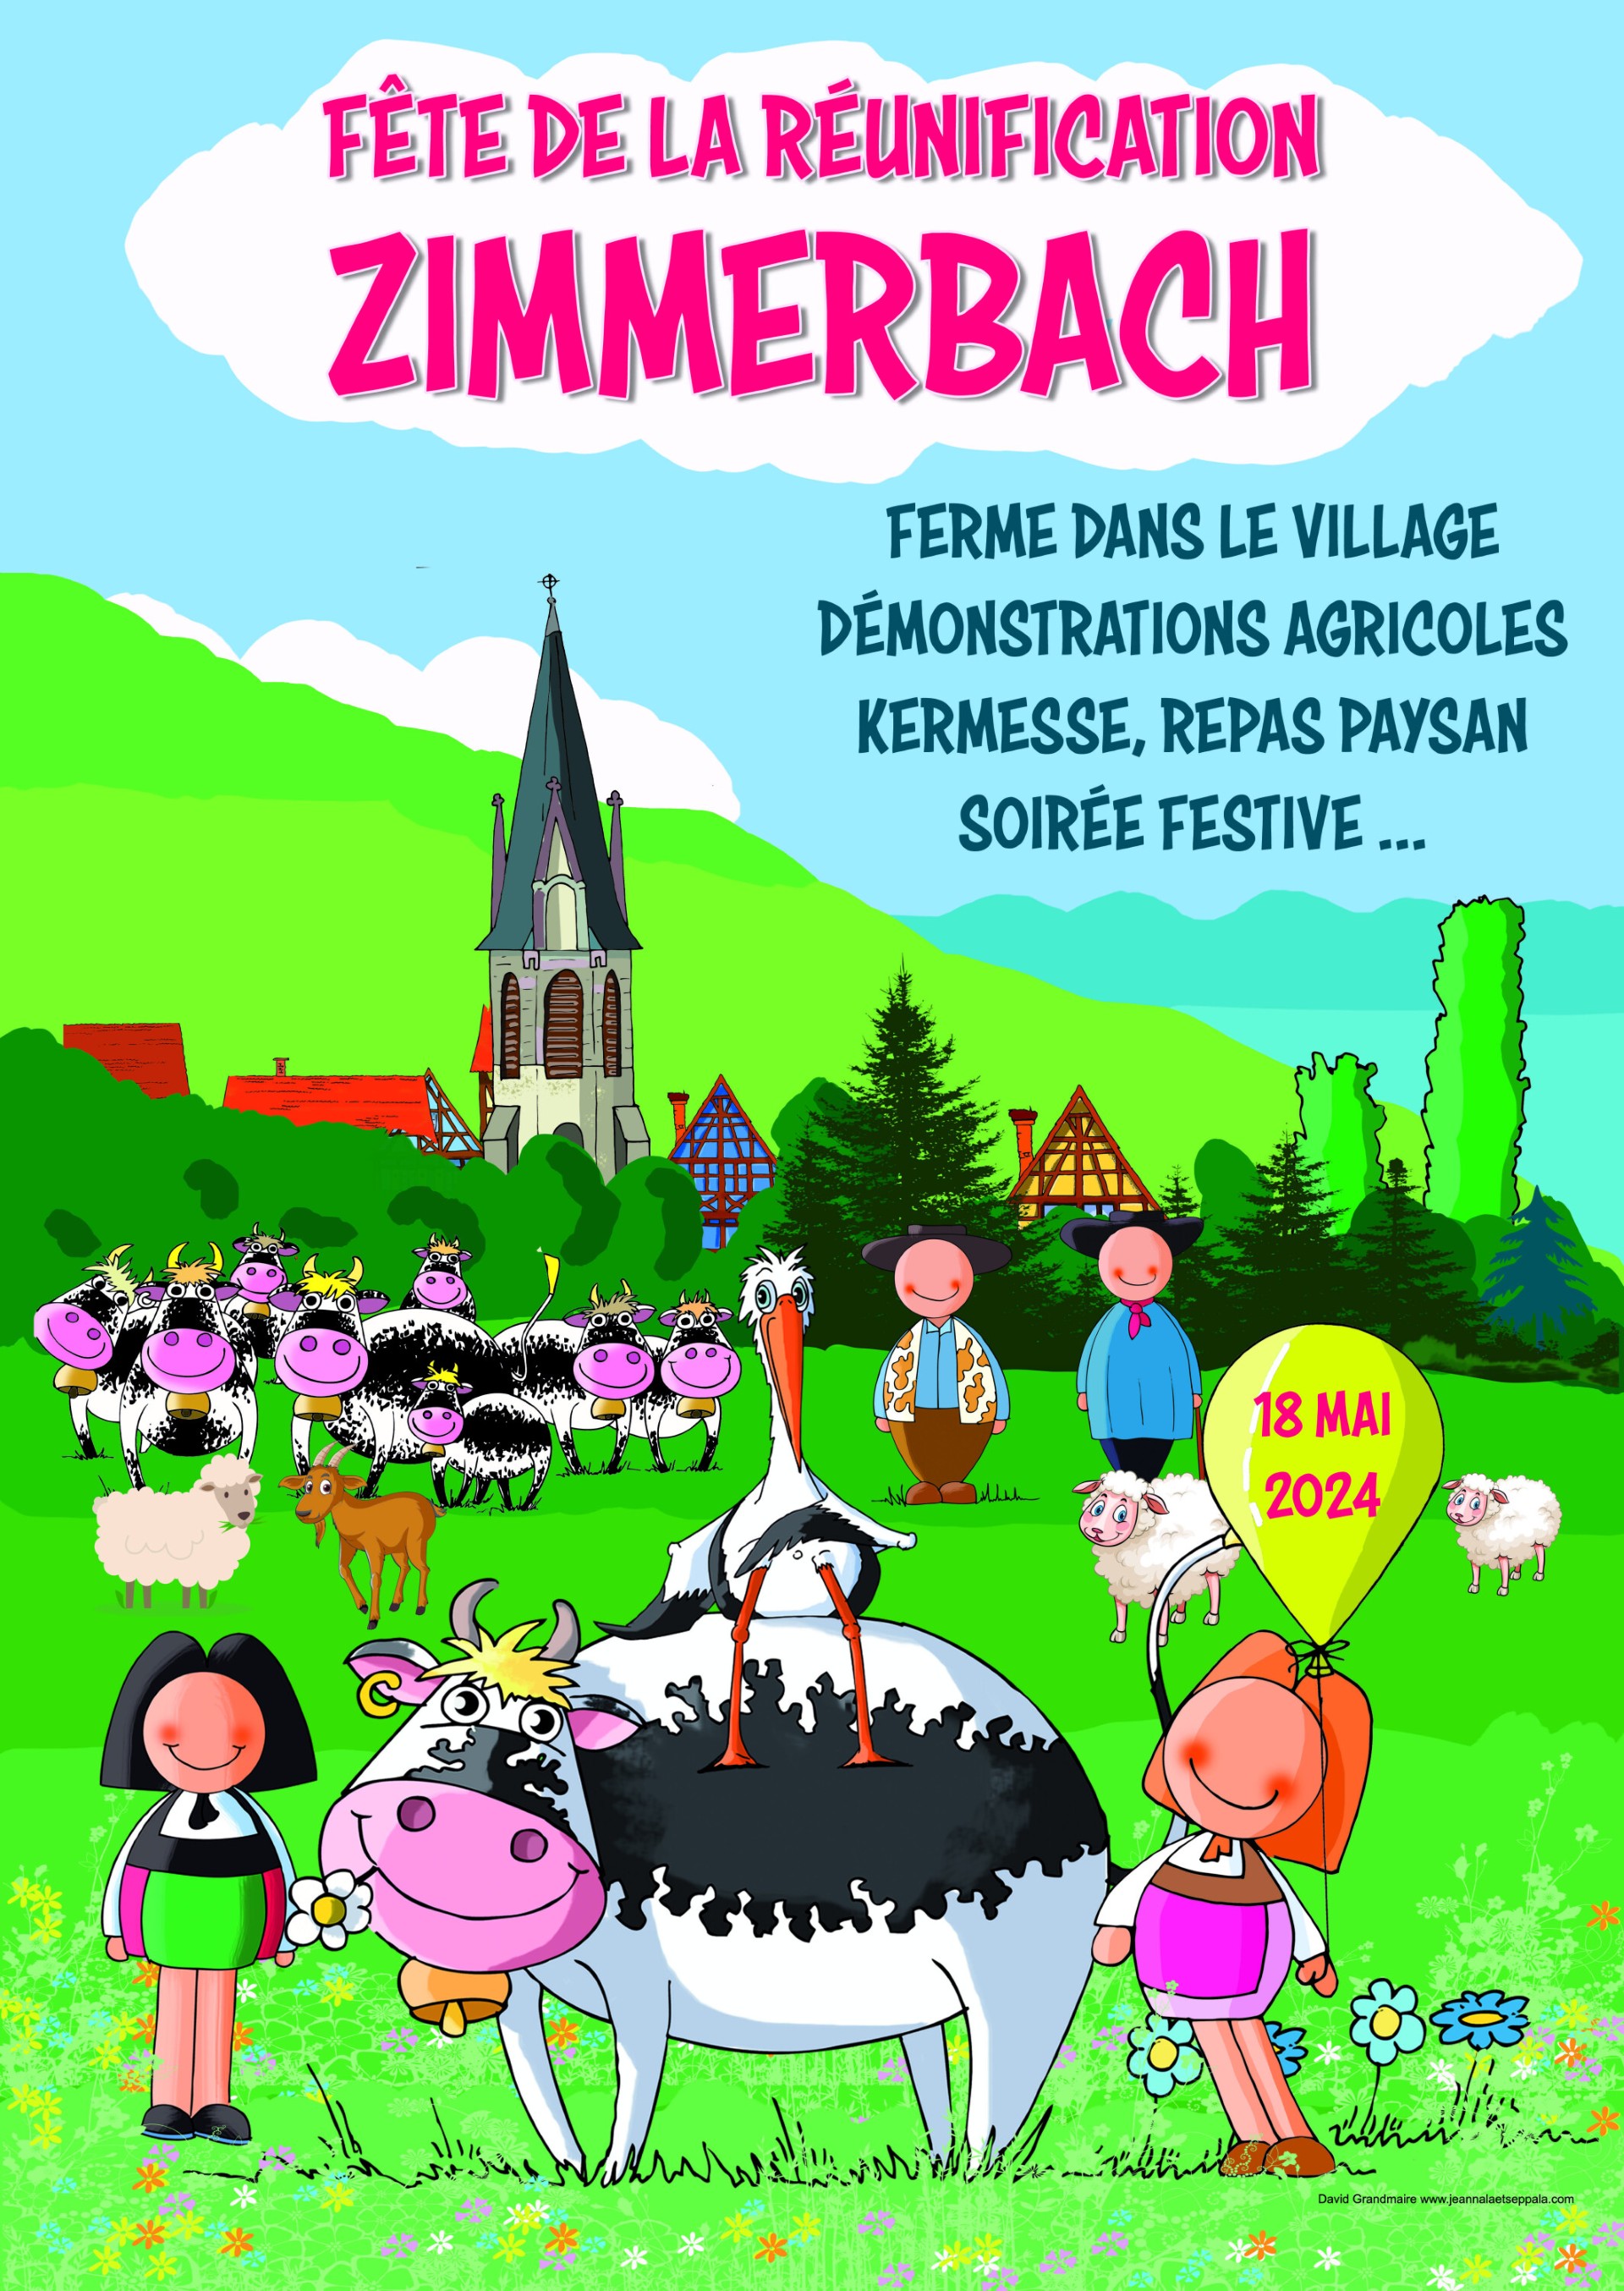 Fête de la réunification Zimmerbach Le 18 mai 2024